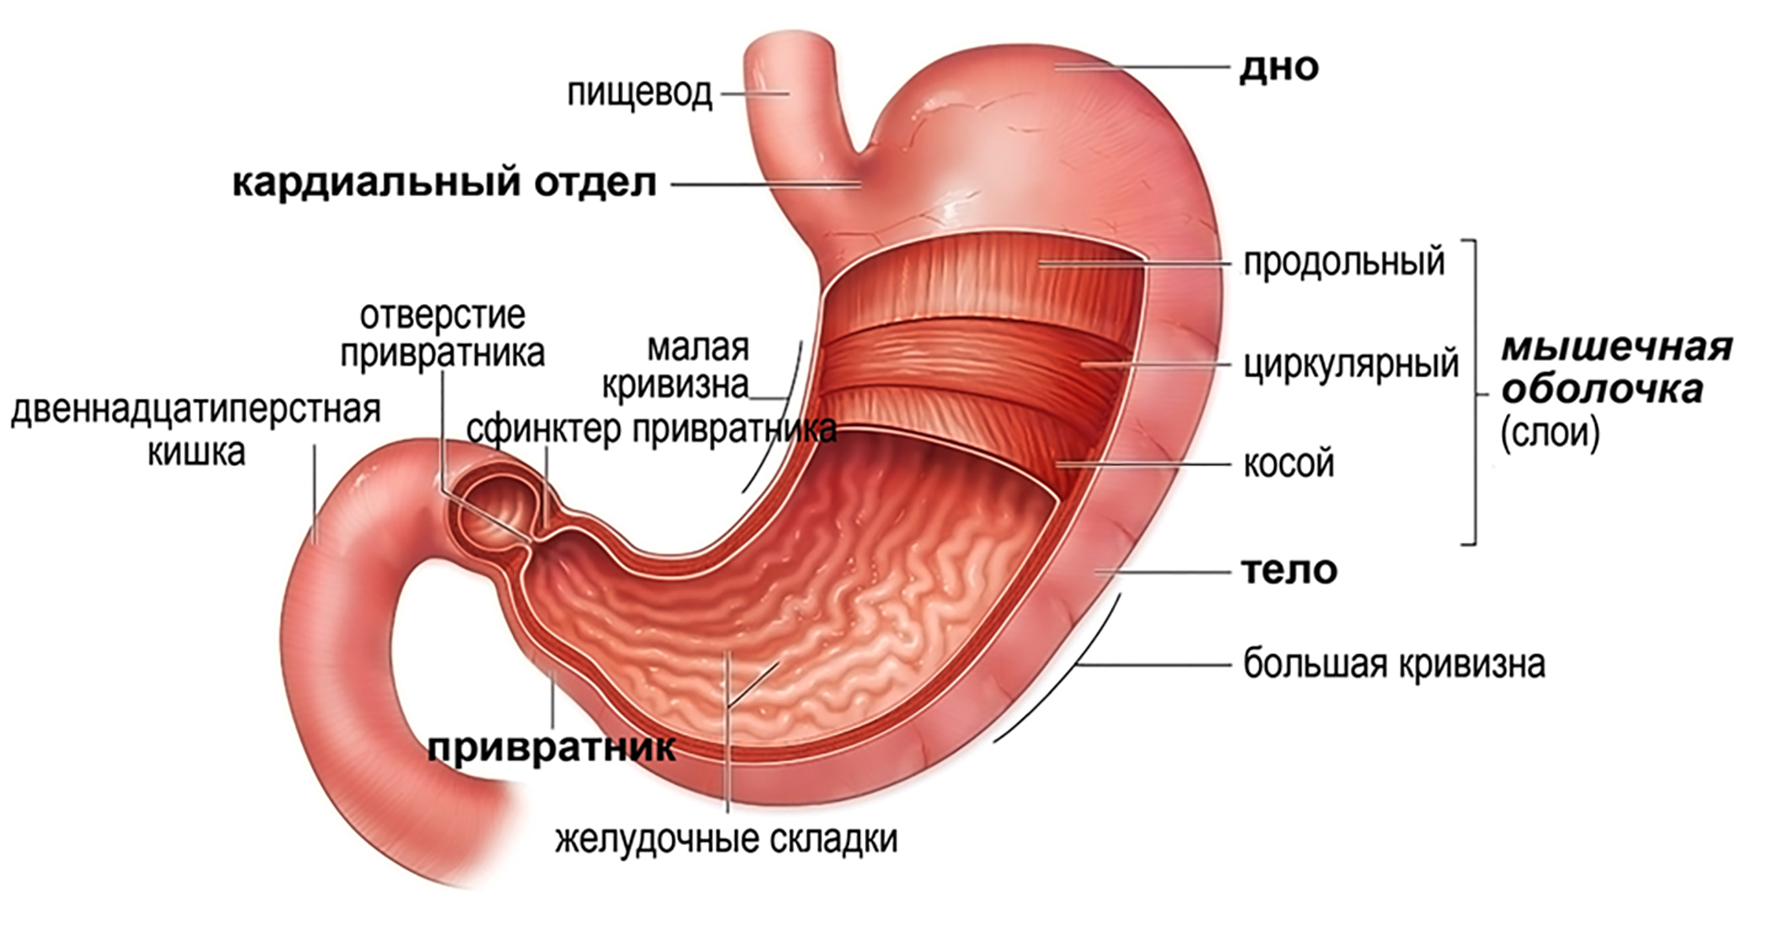 Строение желудка биология. Желудок строение и функции анатомия. Внешнее и внутреннее строение желудка. Желудок рисунок с подписями. Желудок схема.